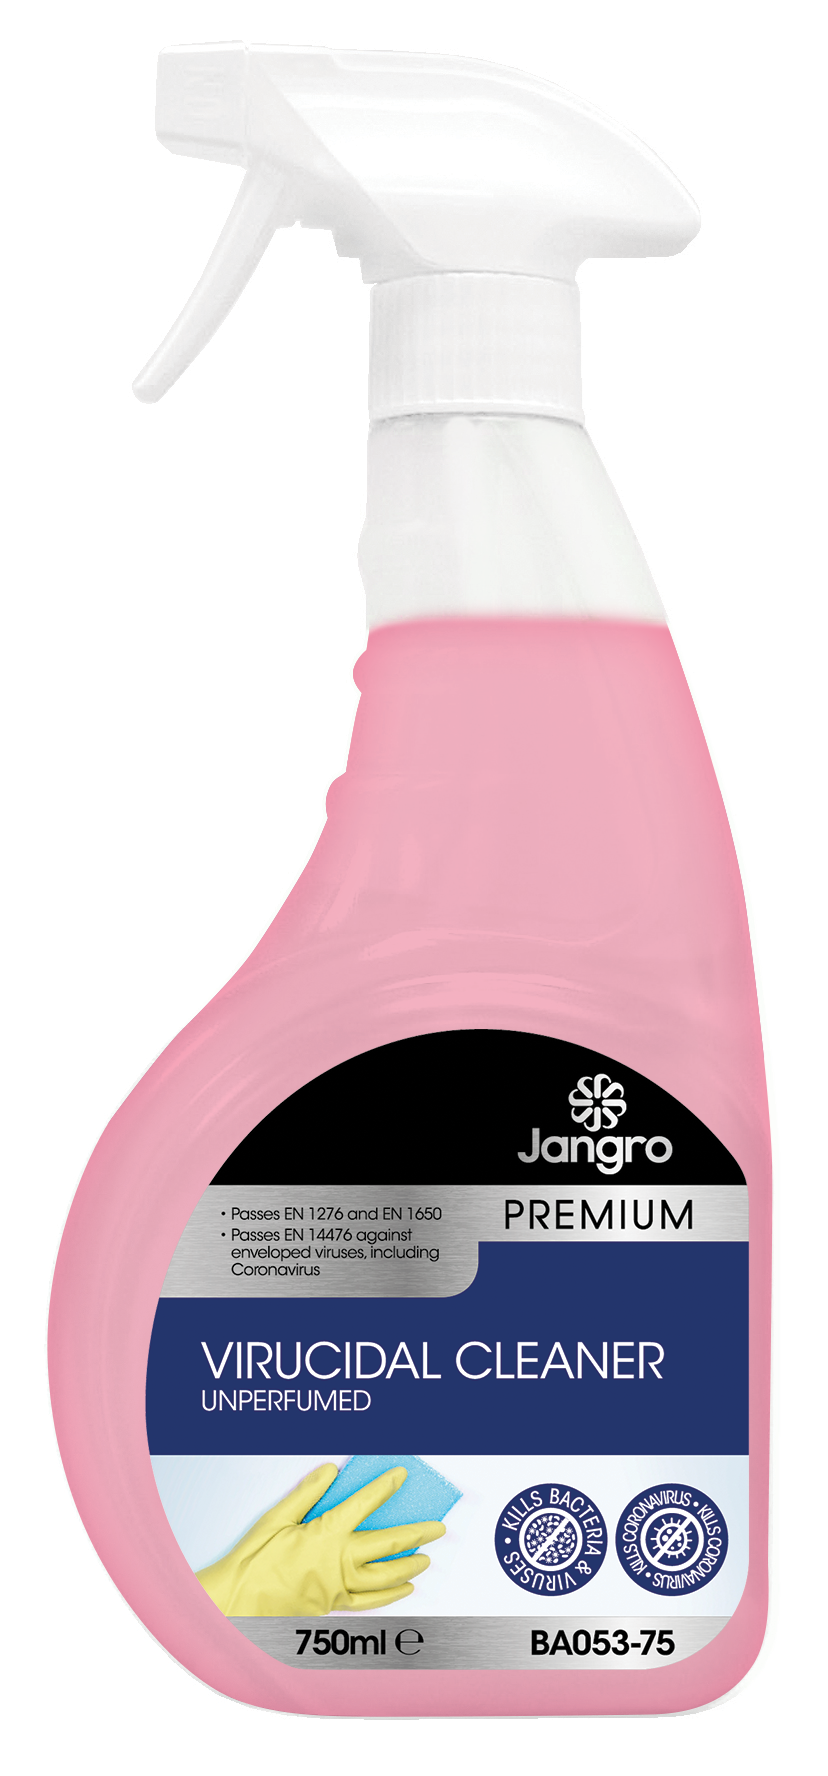 Jangro Premium Virucidal Cleaner - Unperfumed, 750ml - T500